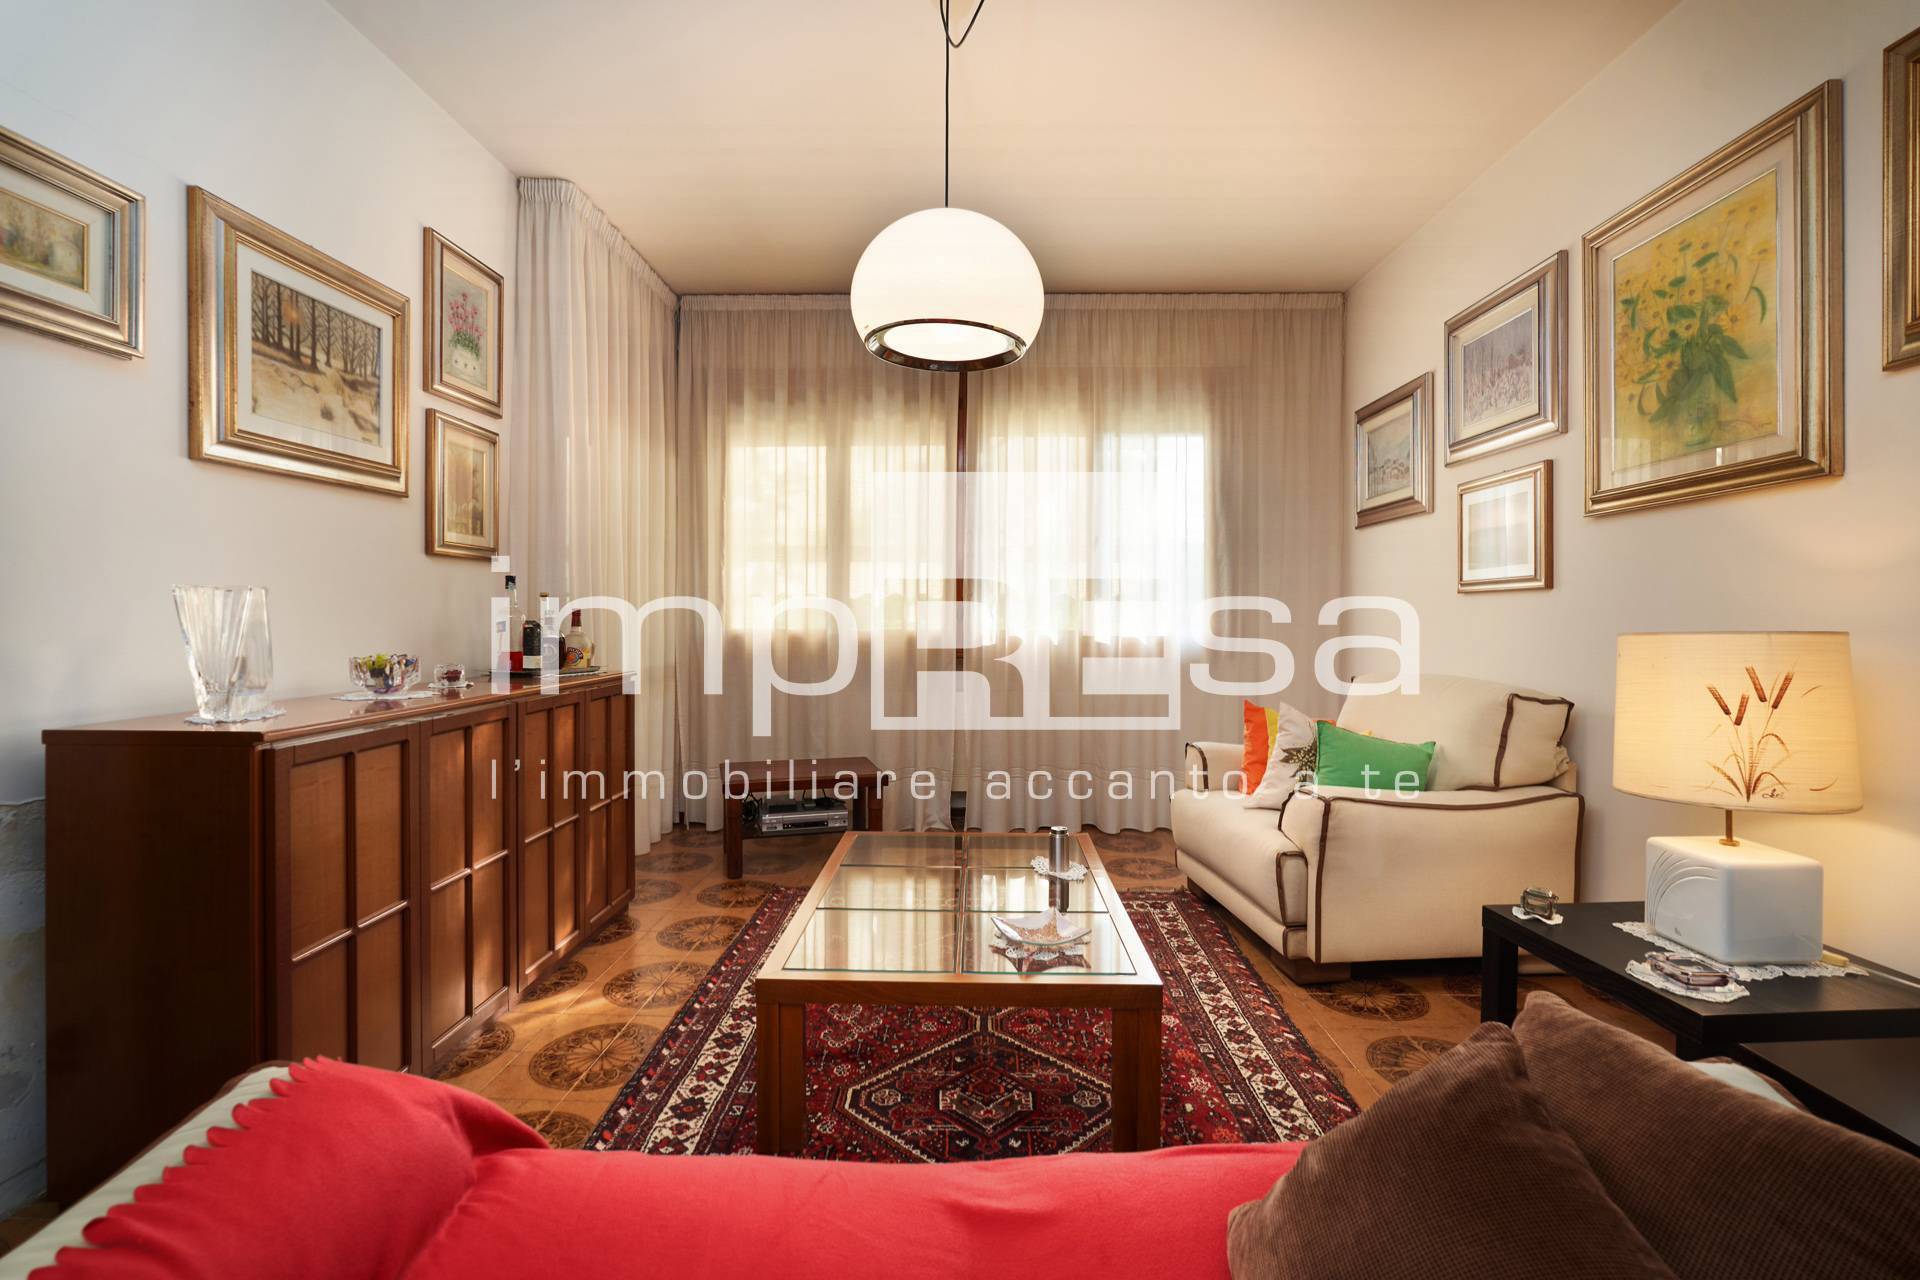 Appartamento in vendita a Conegliano, 4 locali, prezzo € 163.000 | PortaleAgenzieImmobiliari.it